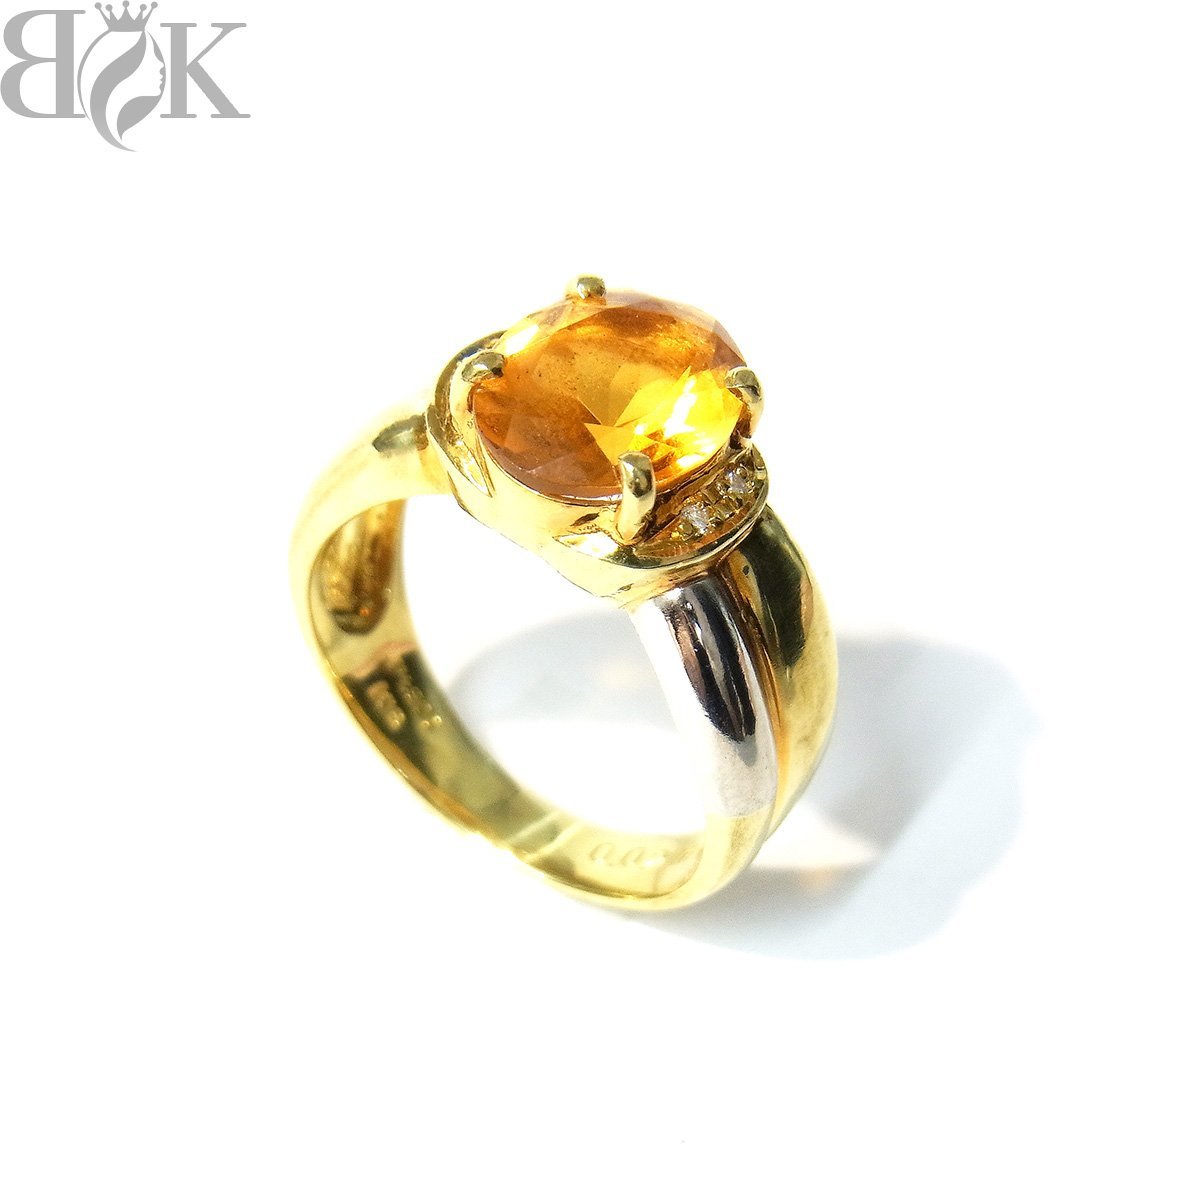 美品 K18 Pt900 デザインリング 指輪 ダイヤ オレンジ石 イエローゴールド プラチナ コンビ 約12号 0.02ct 総重量約5.8g 超音波洗浄済み 〓 - 0